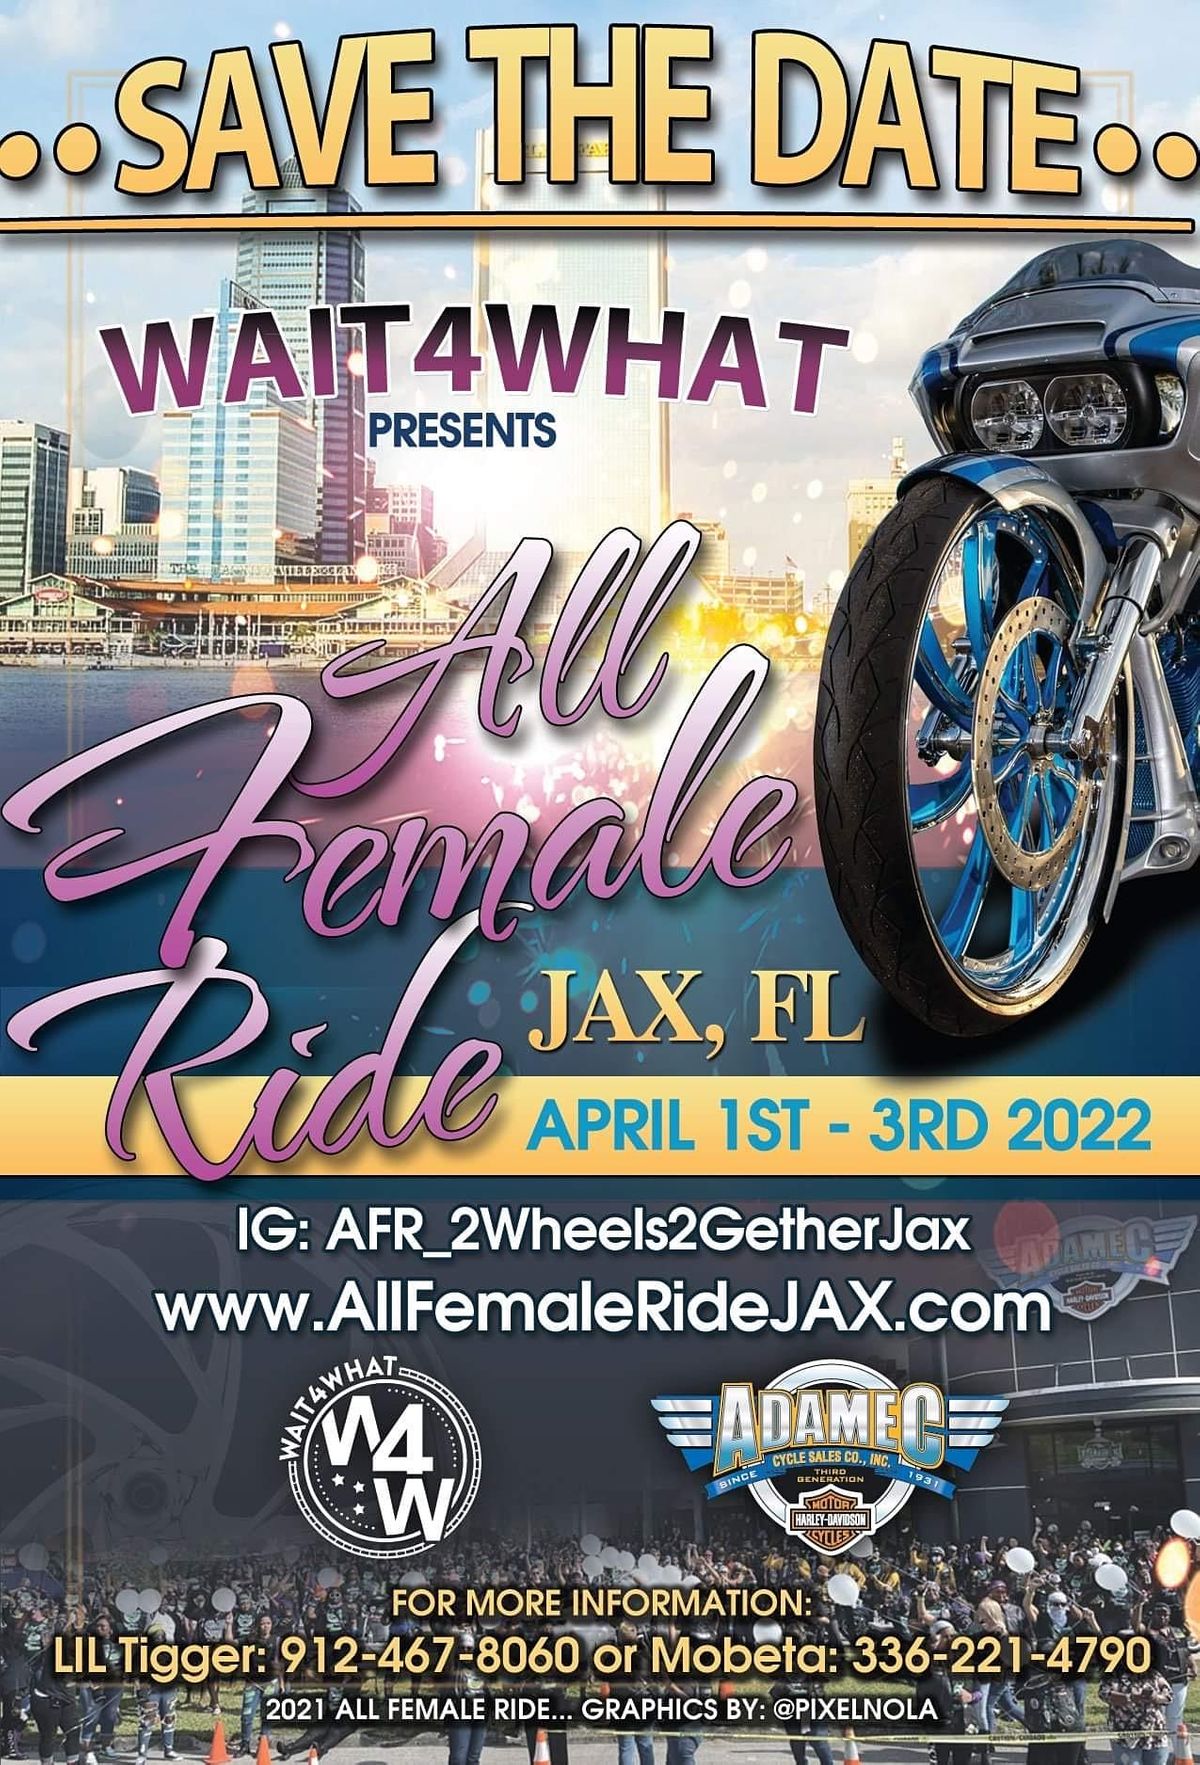 ALL FEMALE RIDE JAX, FL